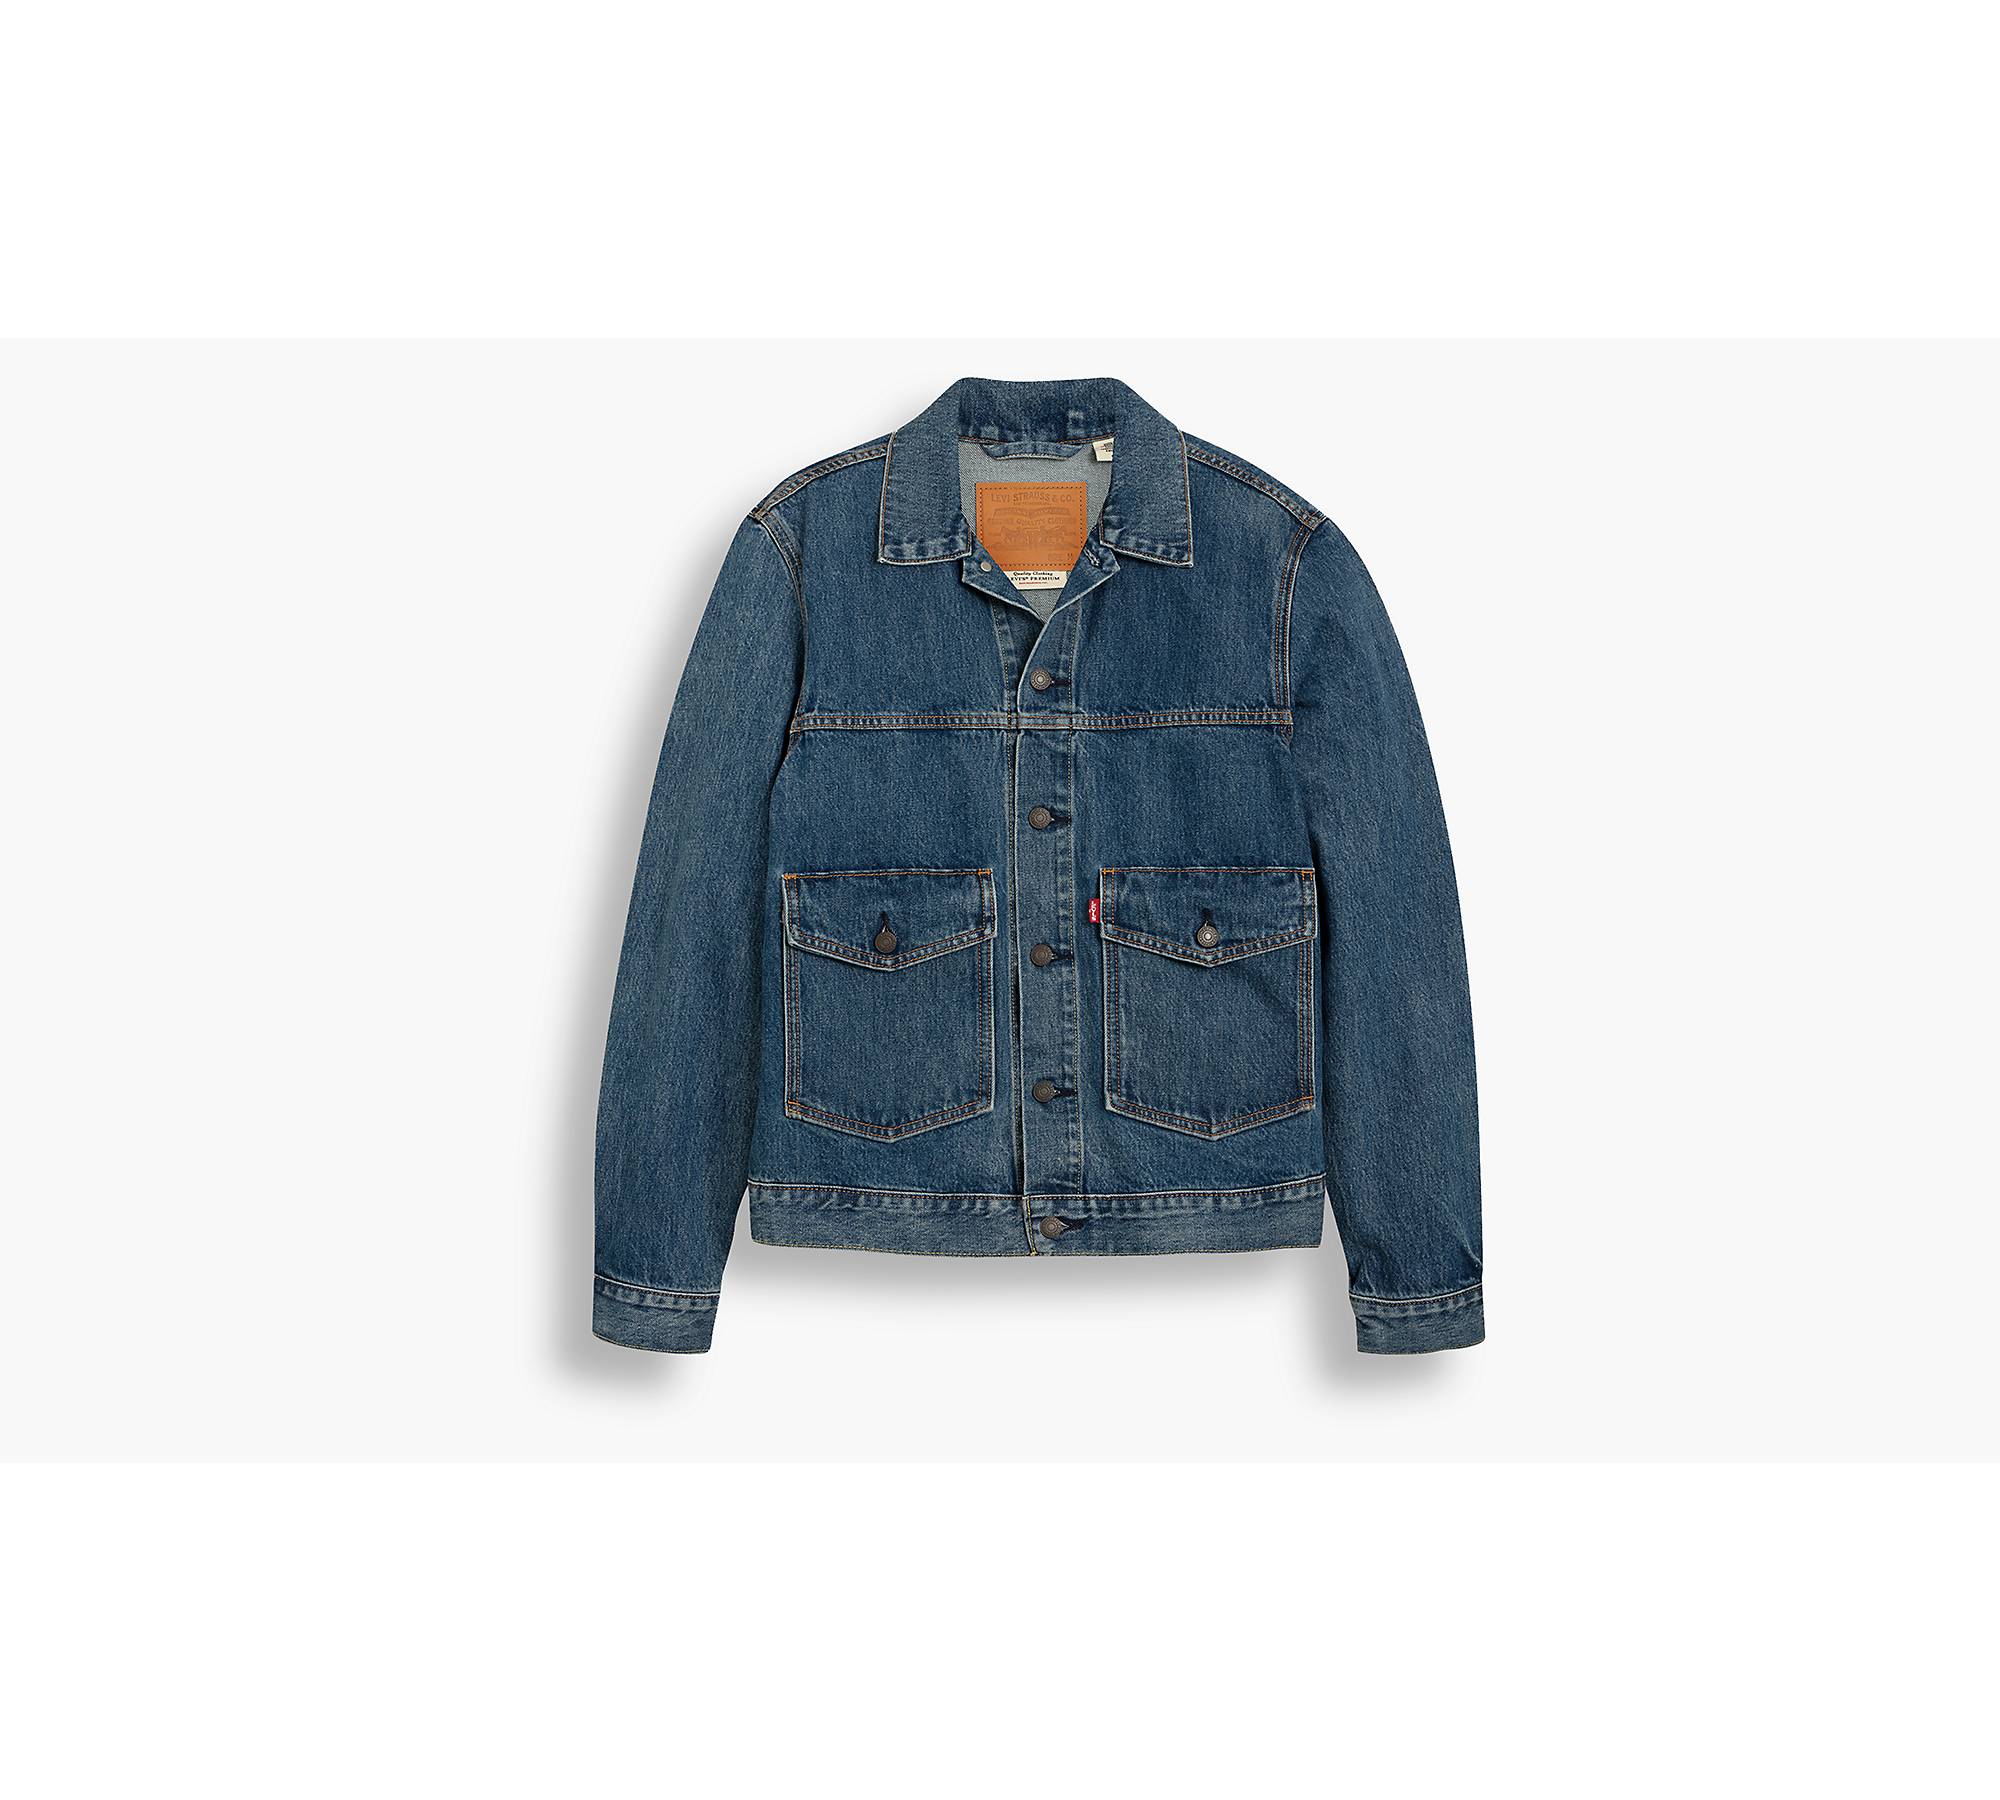 7 Best Patch jean jacket ideas  jean jacket, denim jacket patches, patched  jeans